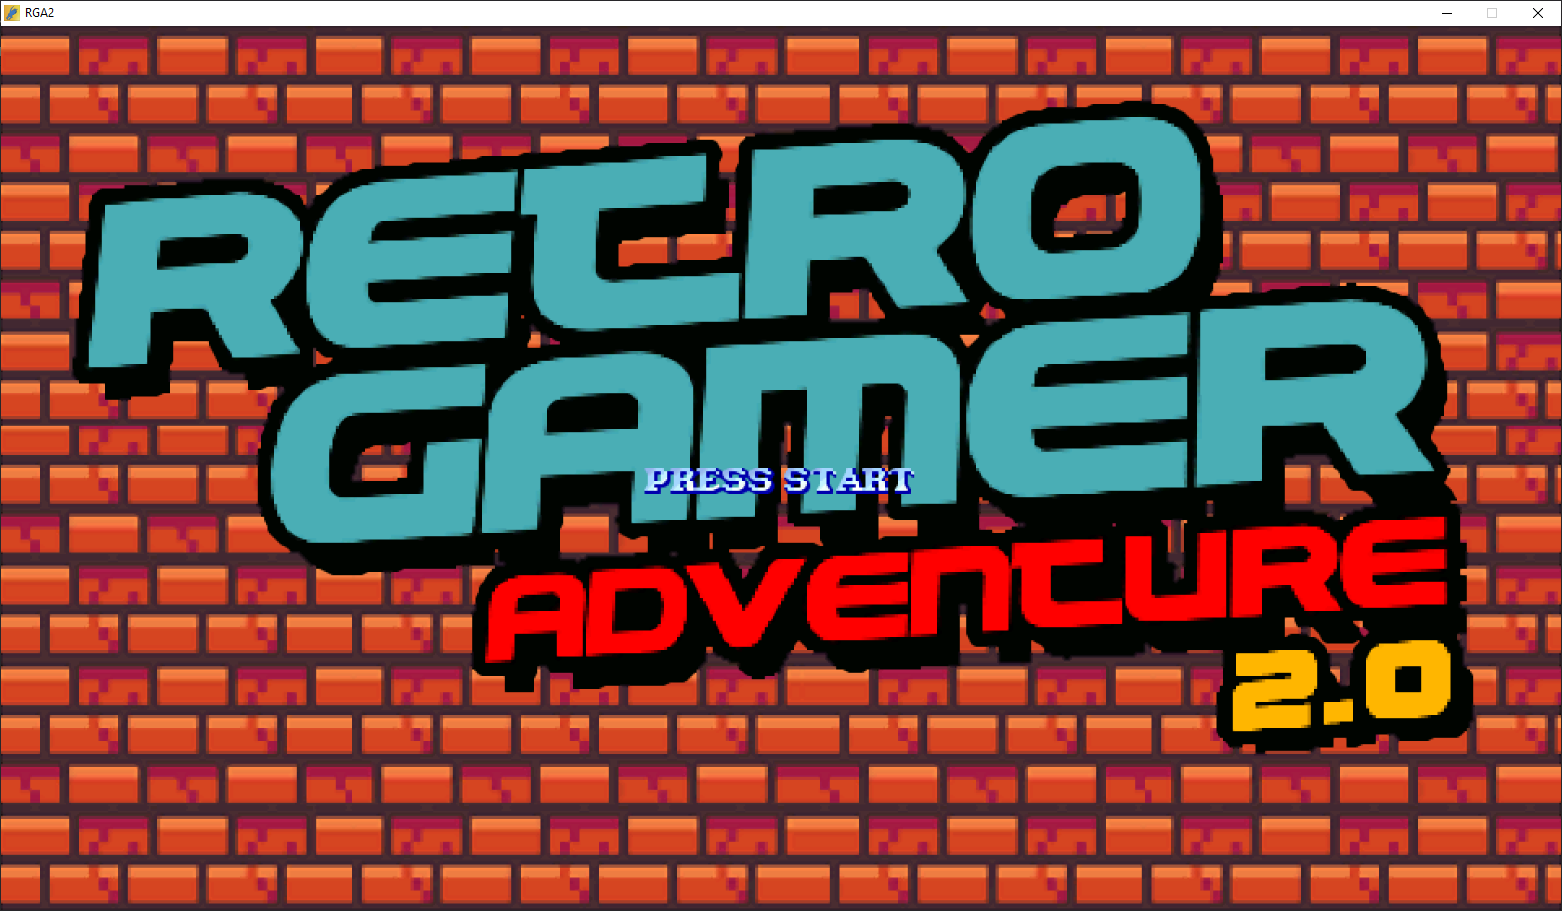 Retro Gamers Adventure by Zvitor - openbor